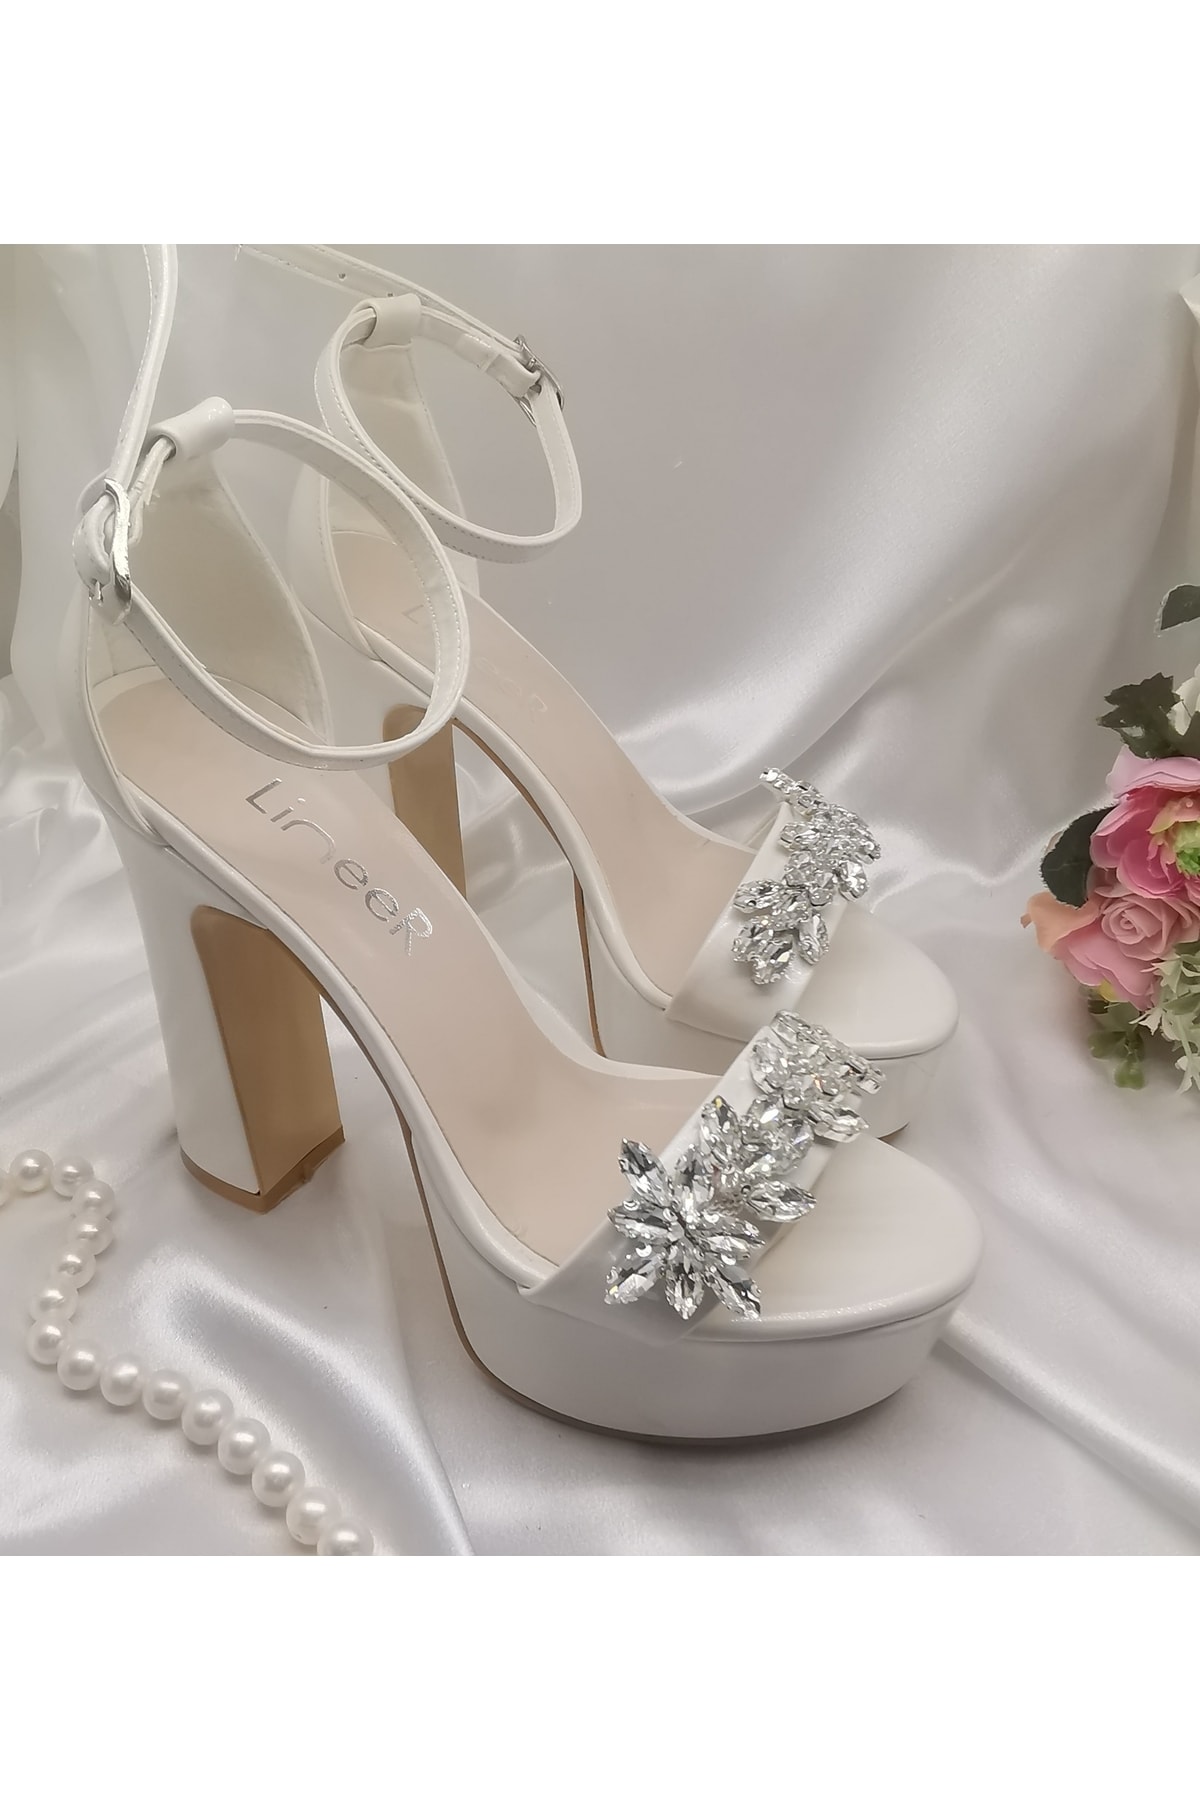 LİNEER Kadın Sedef Beyaz Renk Tek Bant Taşlı 13 Cm Yüksek Platform Topuklu Abiye Gelin Ayakkabısı